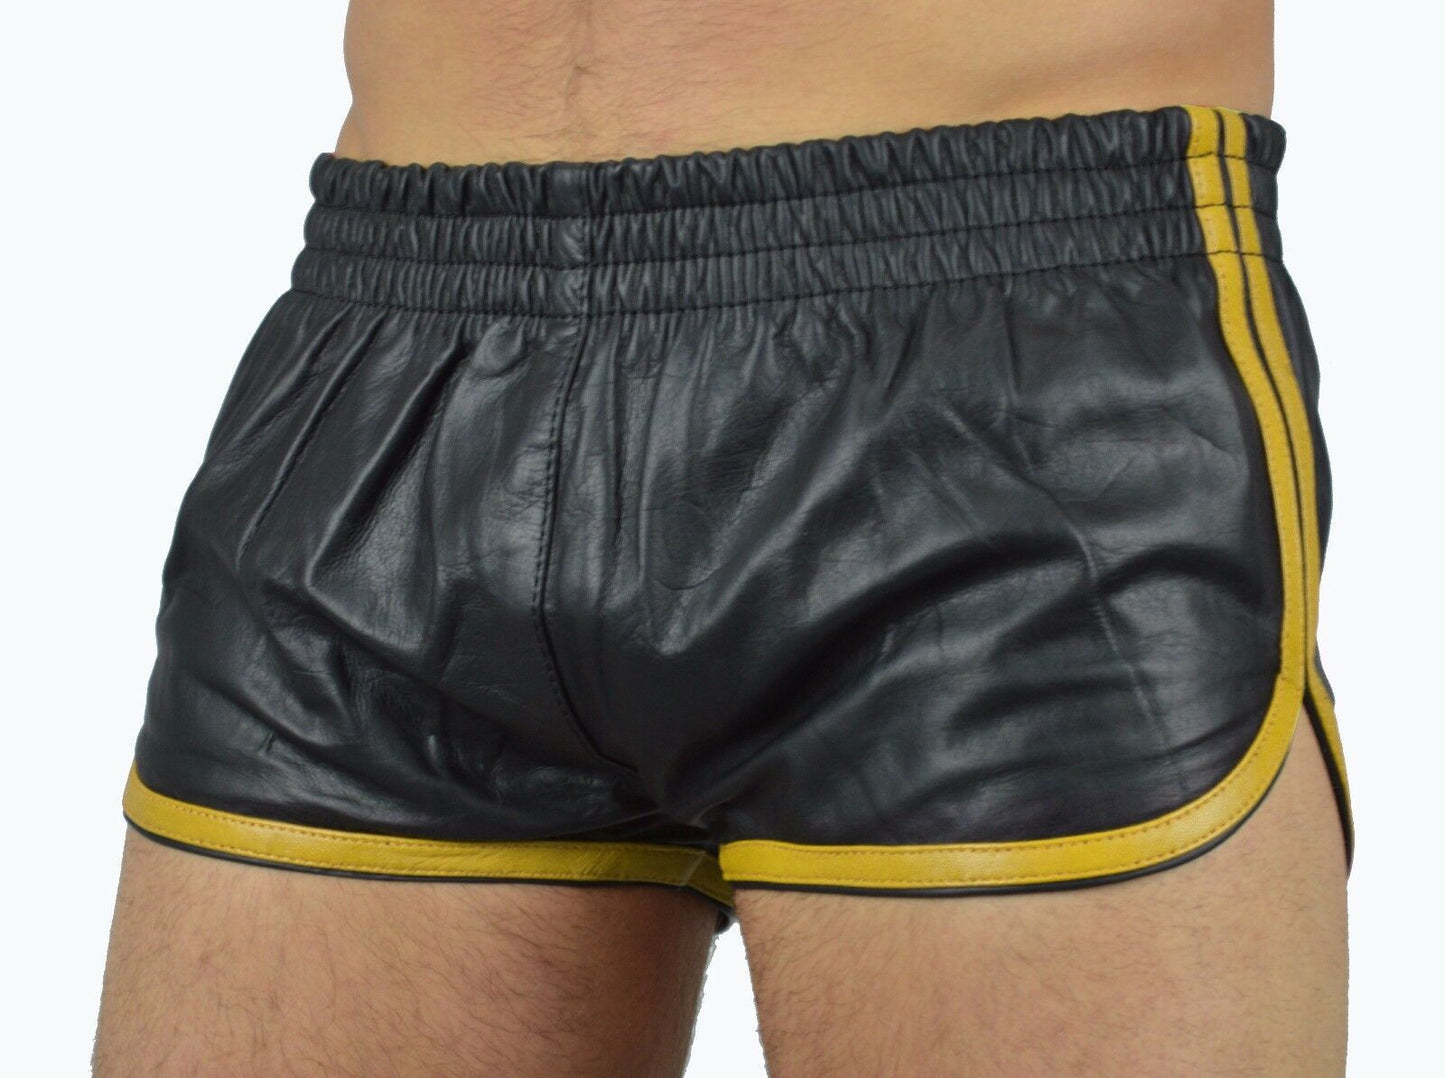 Short leather shorts